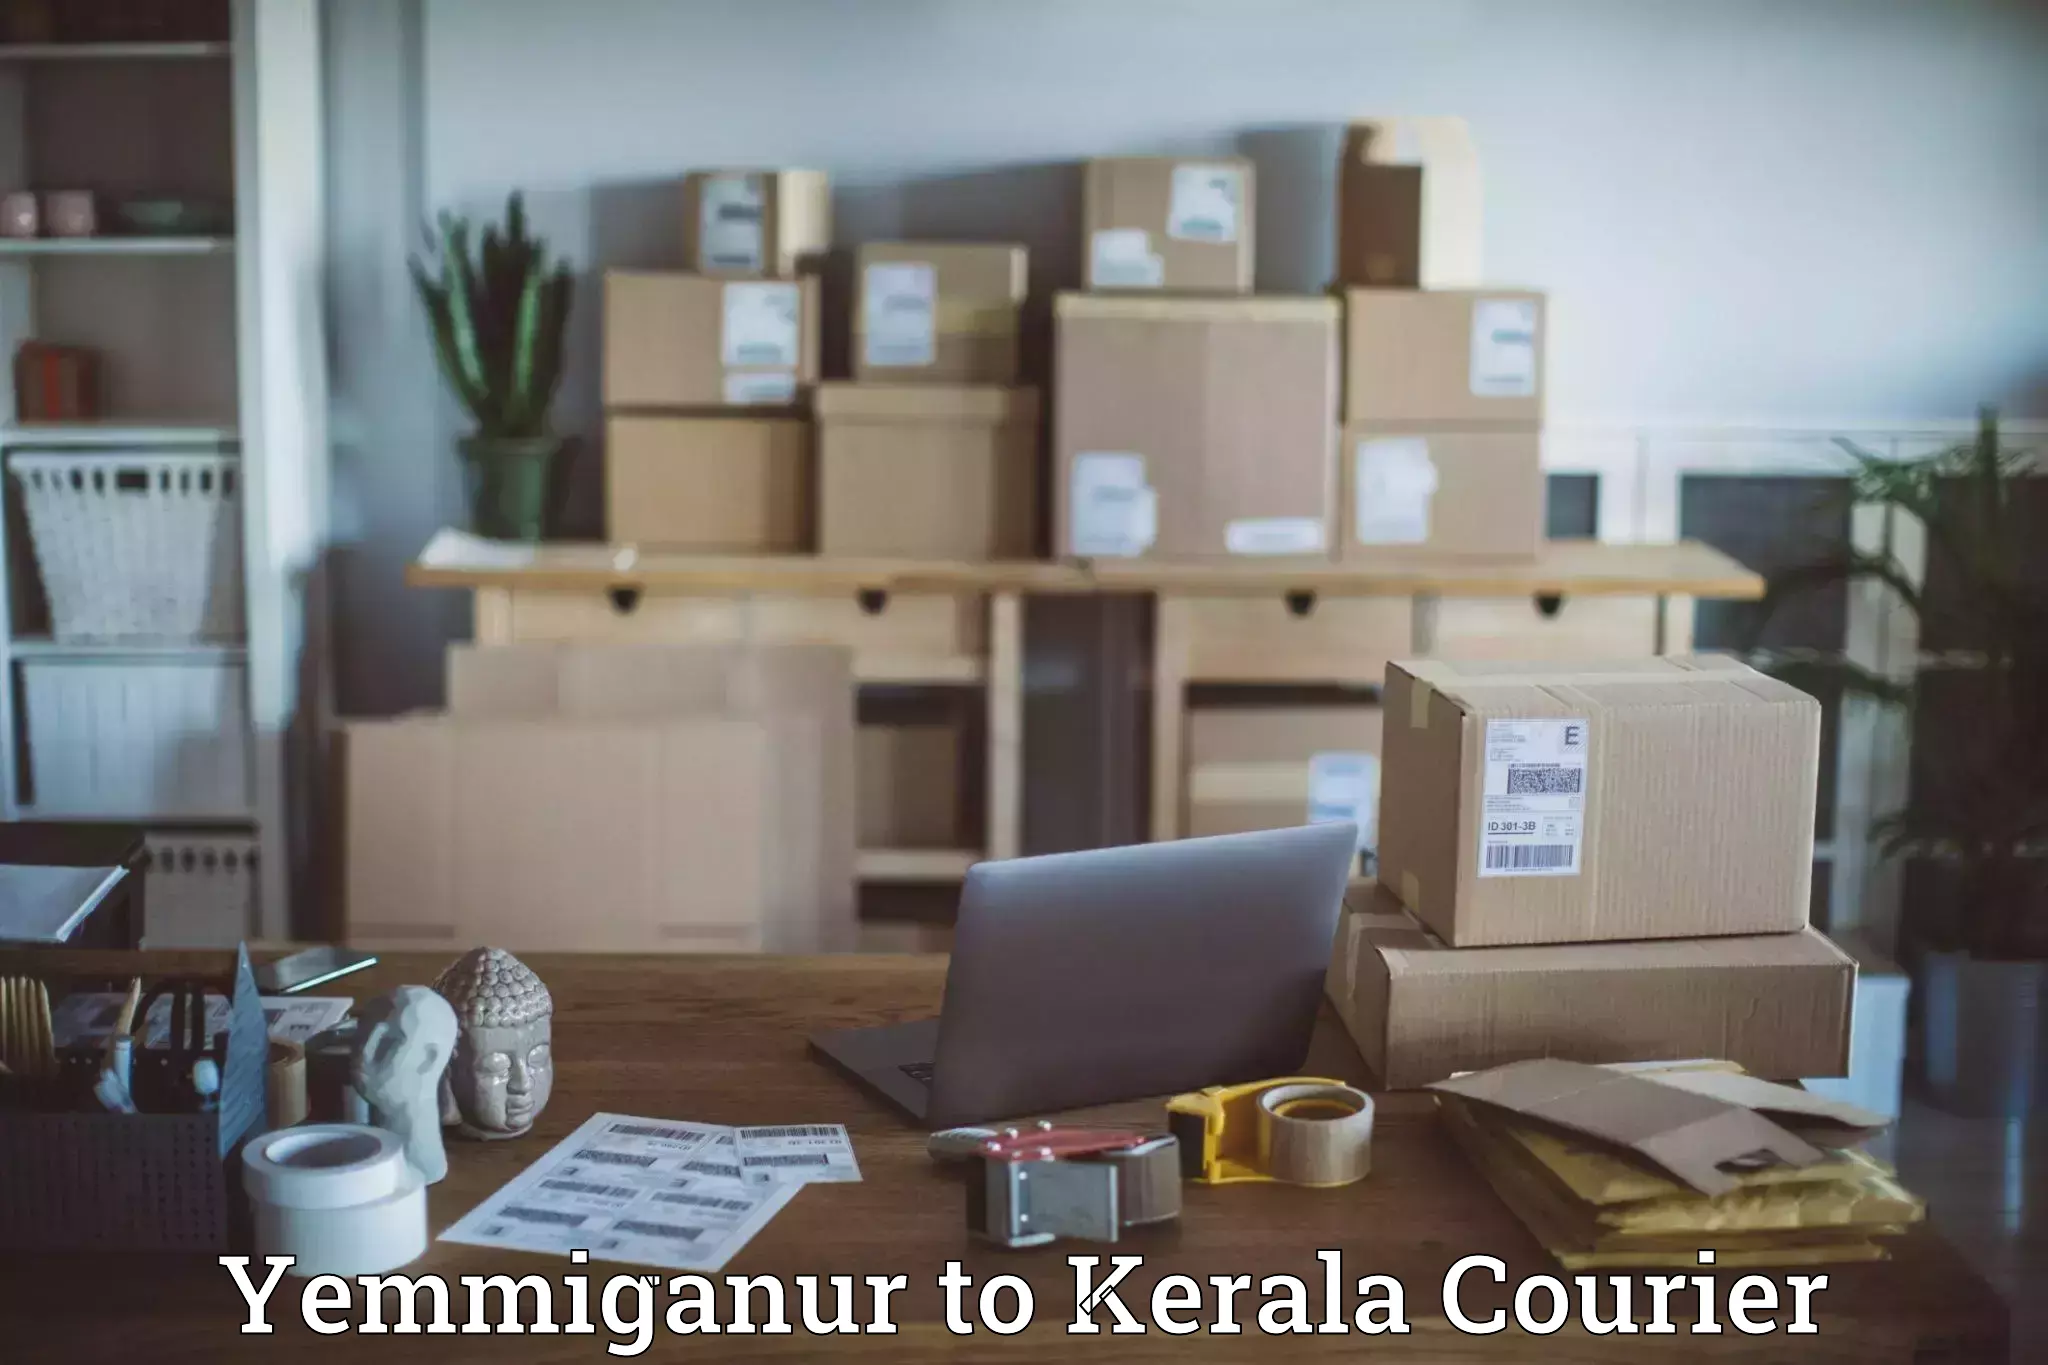 Online courier booking Yemmiganur to Parippally